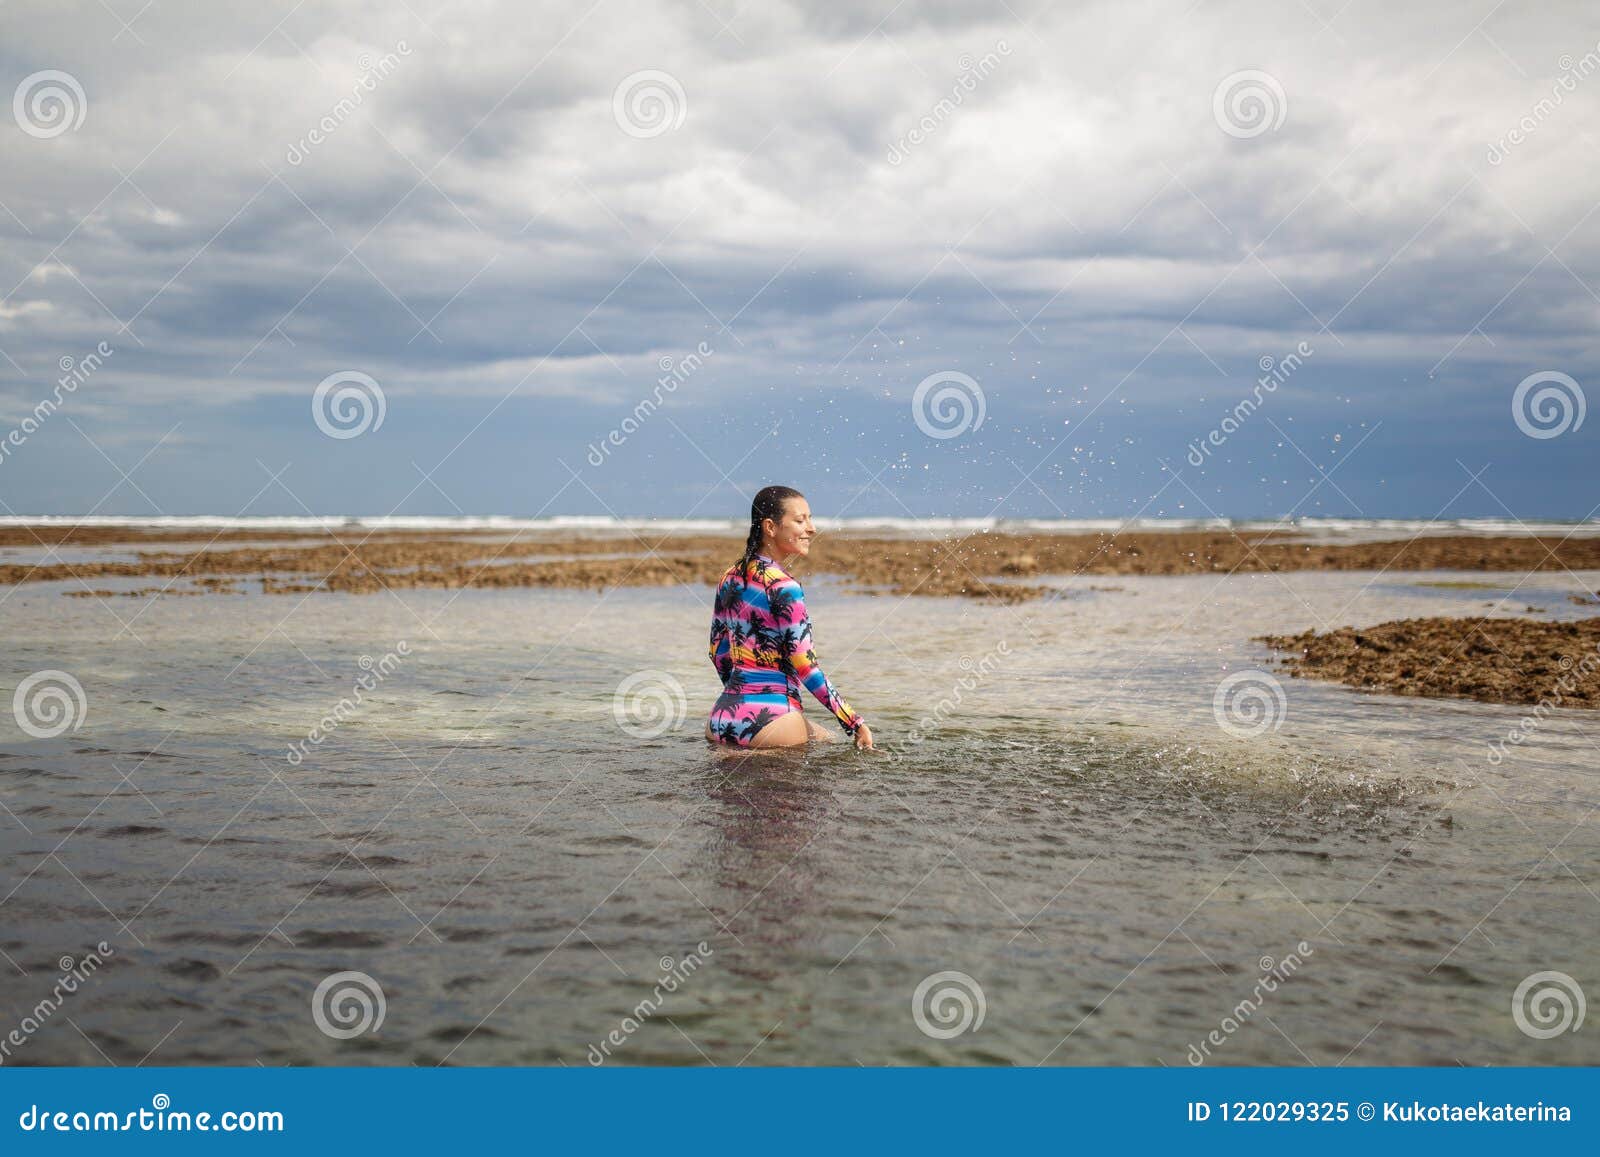 Woman Posing At Ocean Beach Stock Image Image Of Slim Lady 122029325 